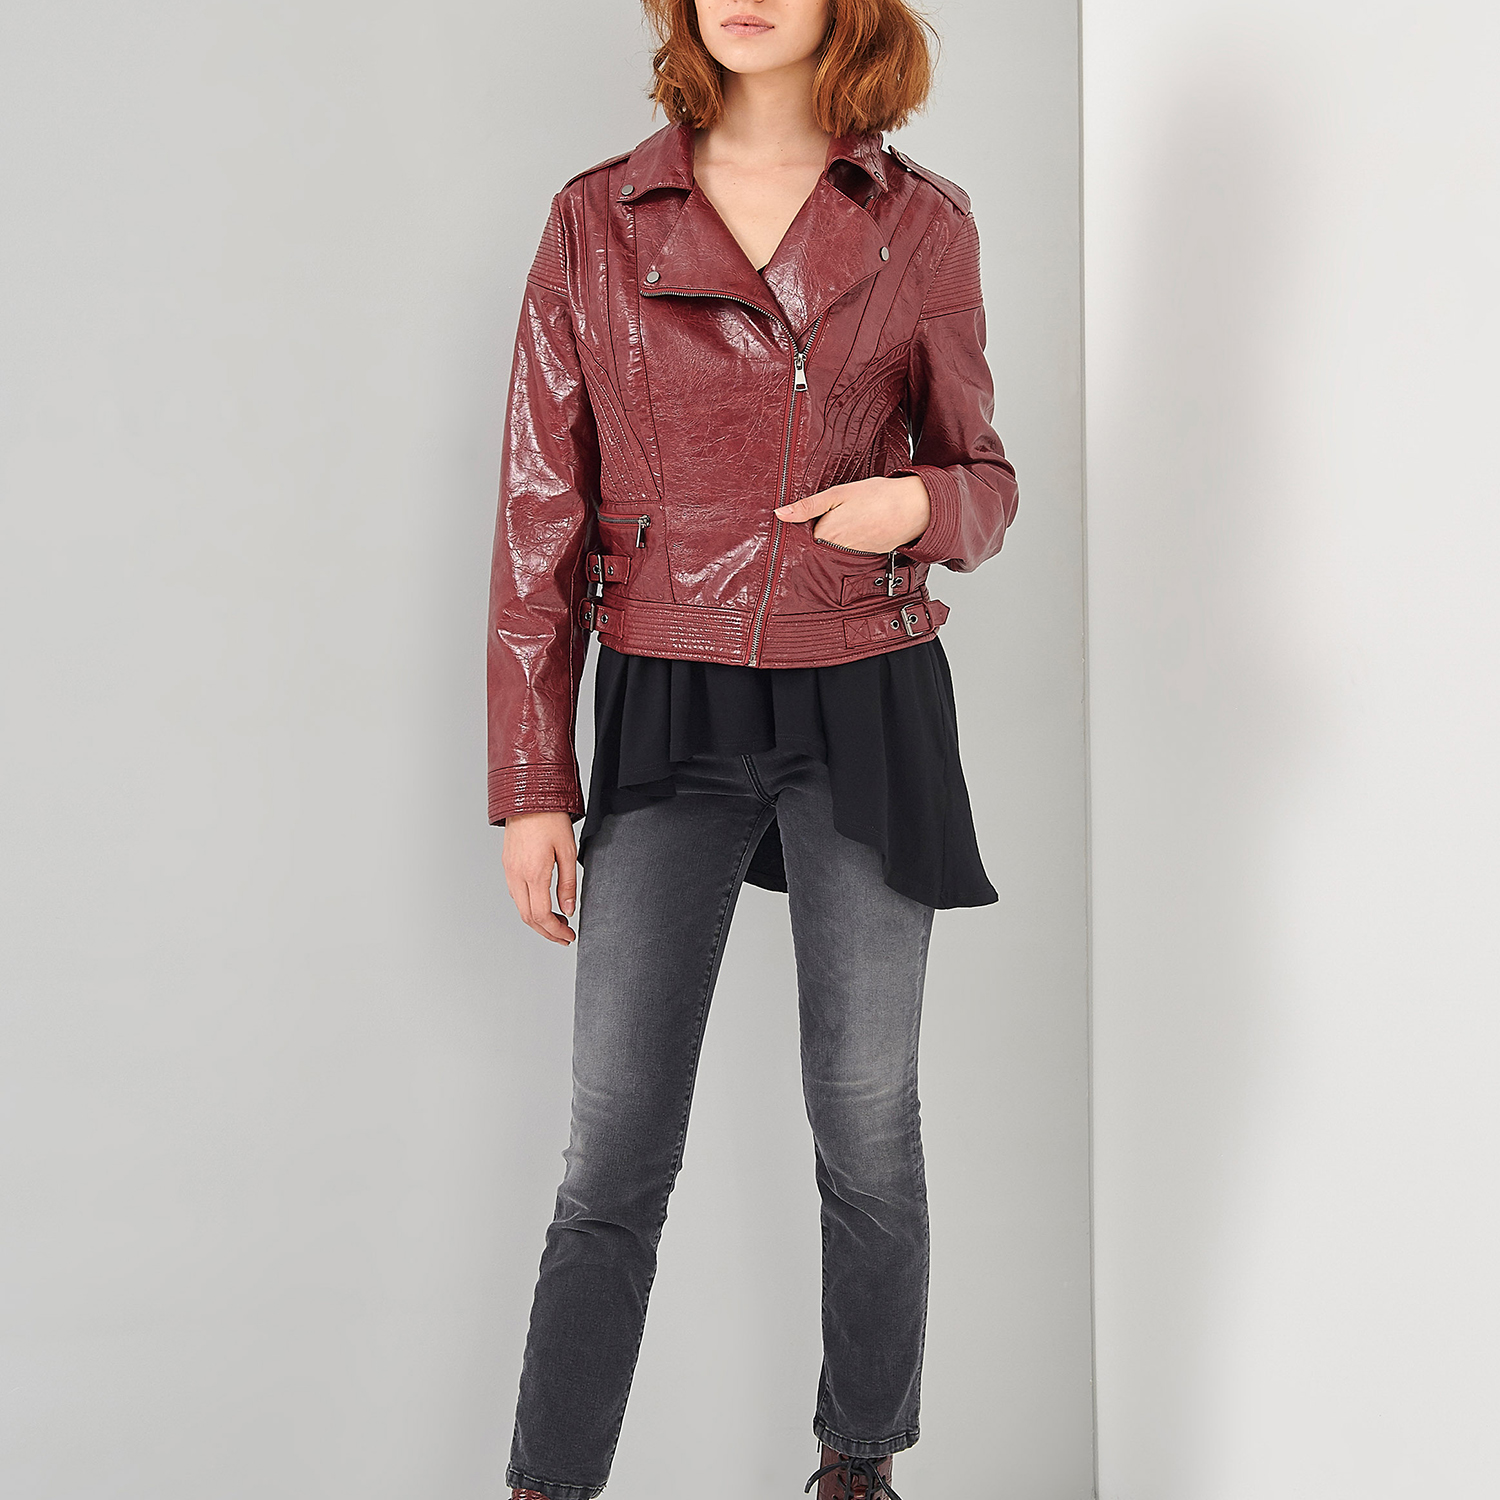 Γυναικεία/Ρούχα/Πανωφόρια/Μπουφάν 'ALE - Γυναικείο jacket 'ALE κόκκινο